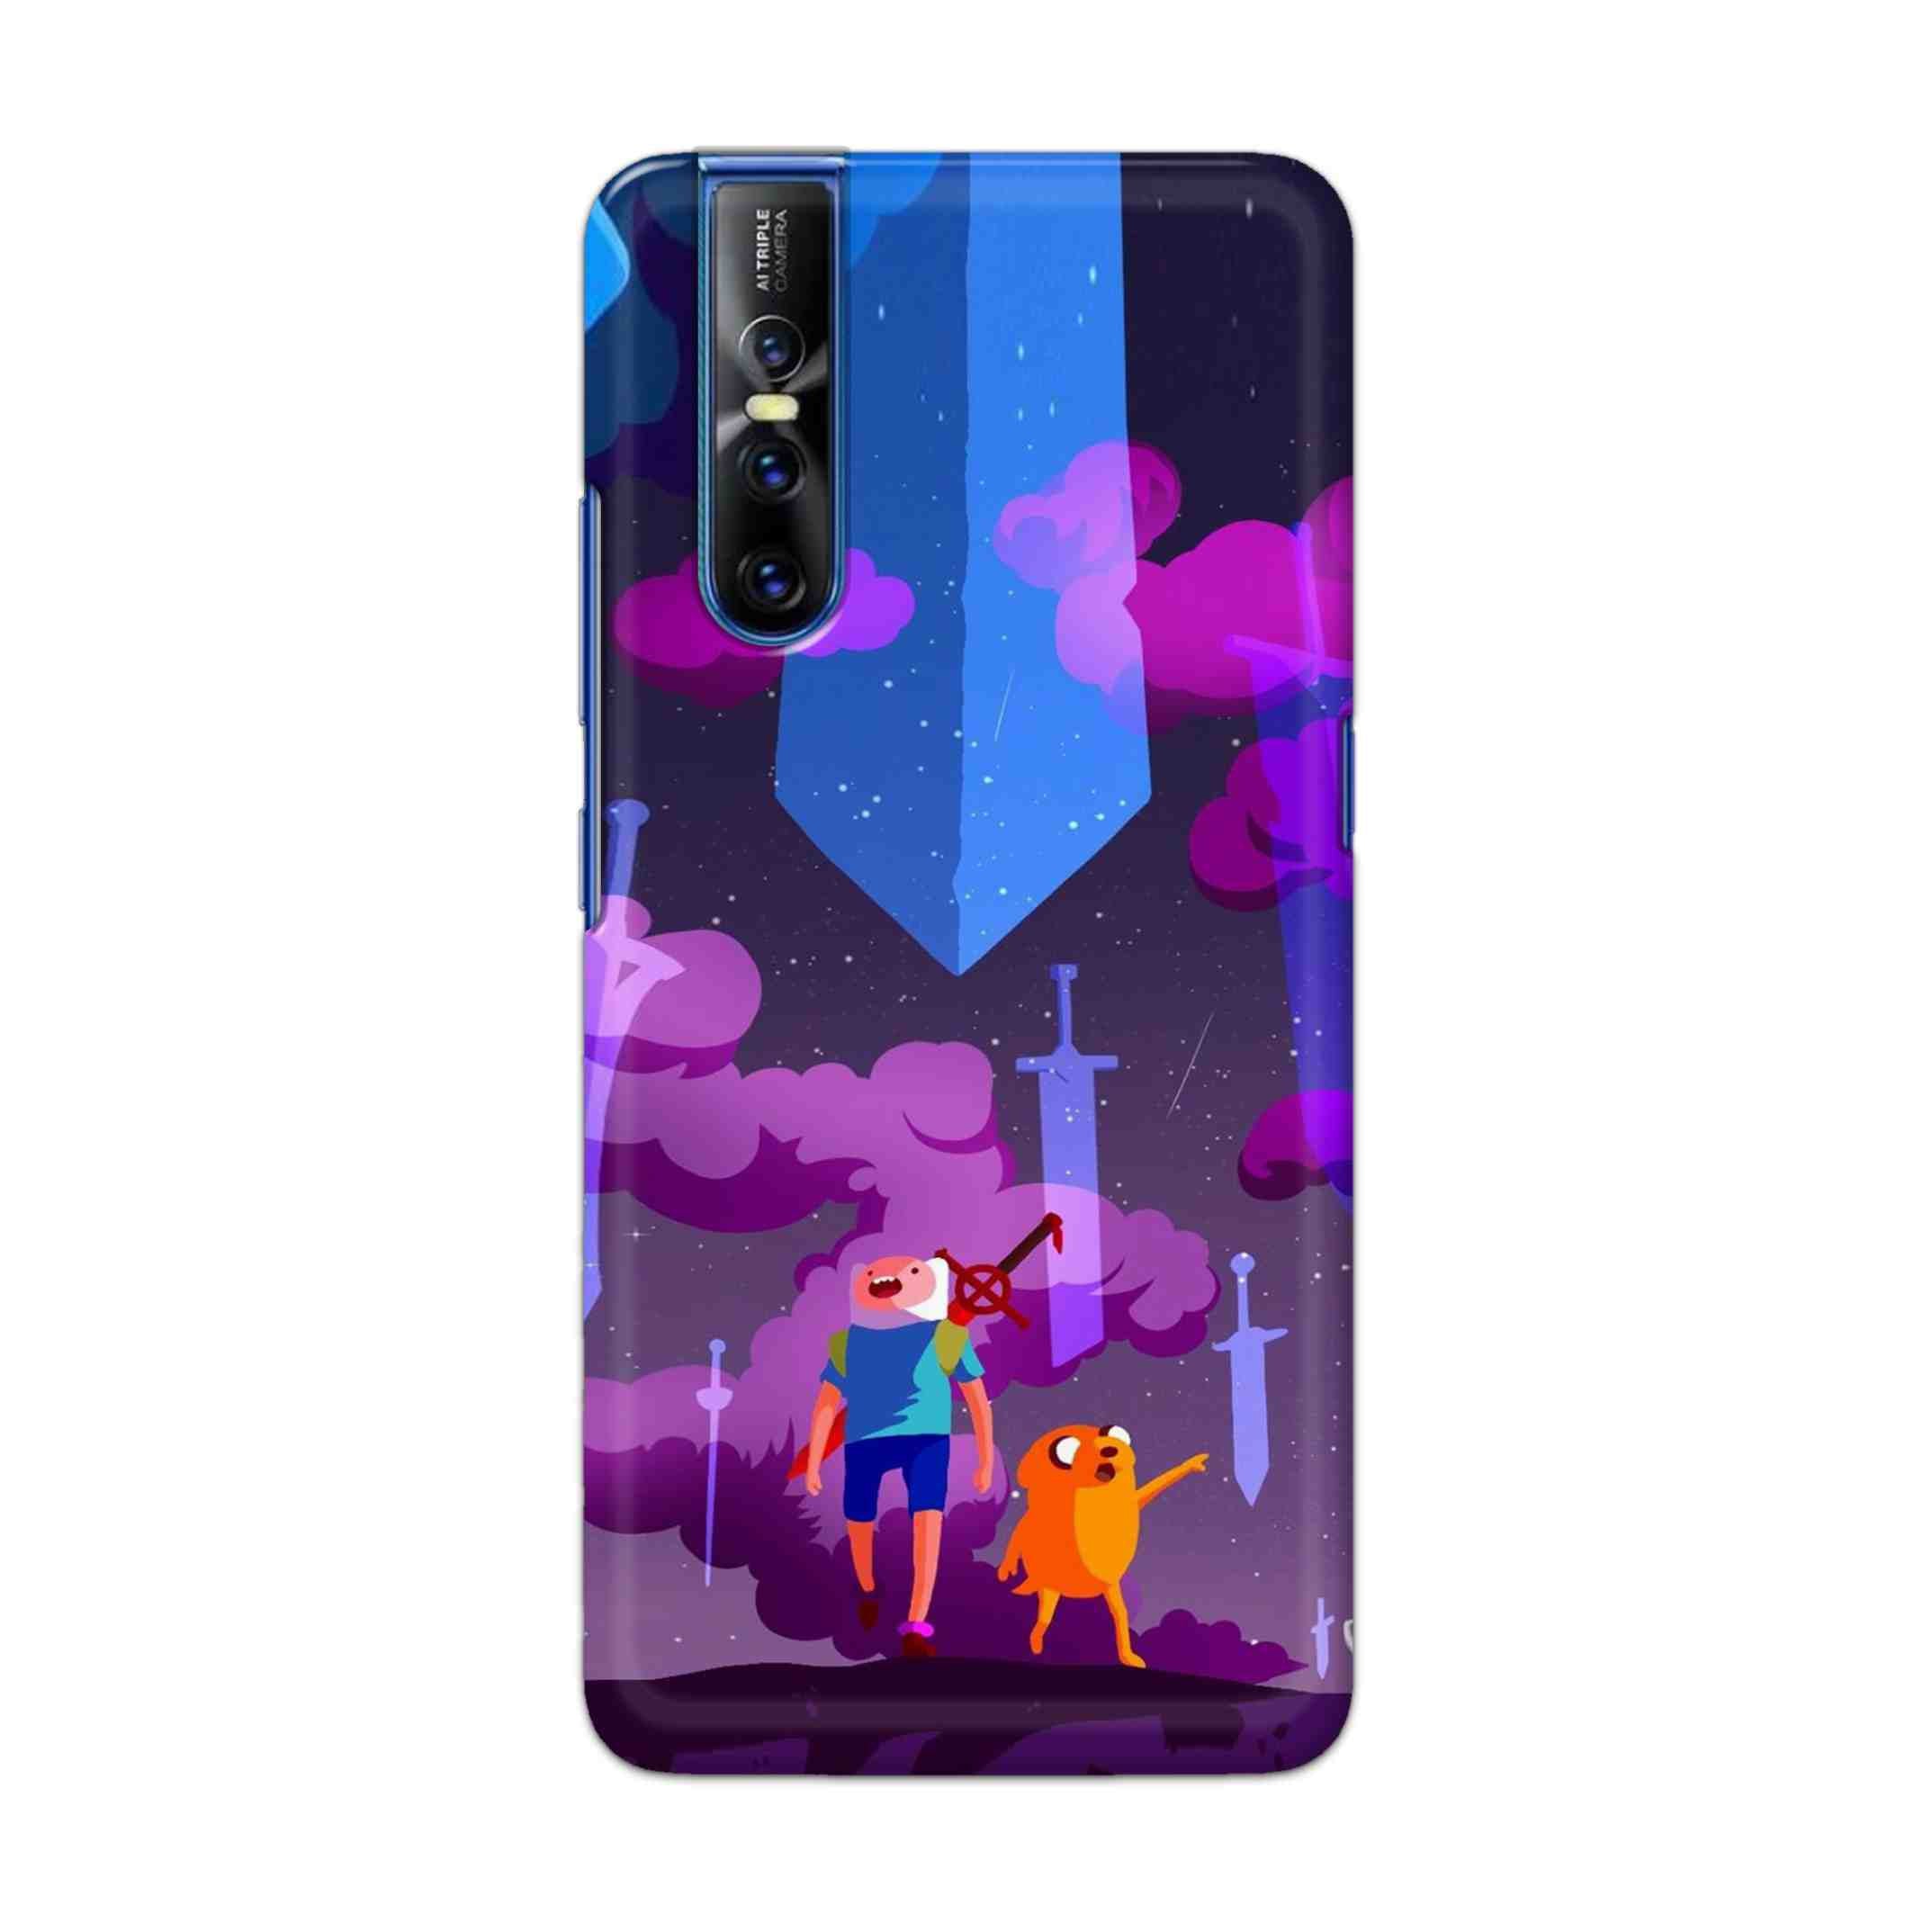 Buy Micky Cartoon Hard Back Mobile Phone Case Cover For Vivo V15 Pro Online